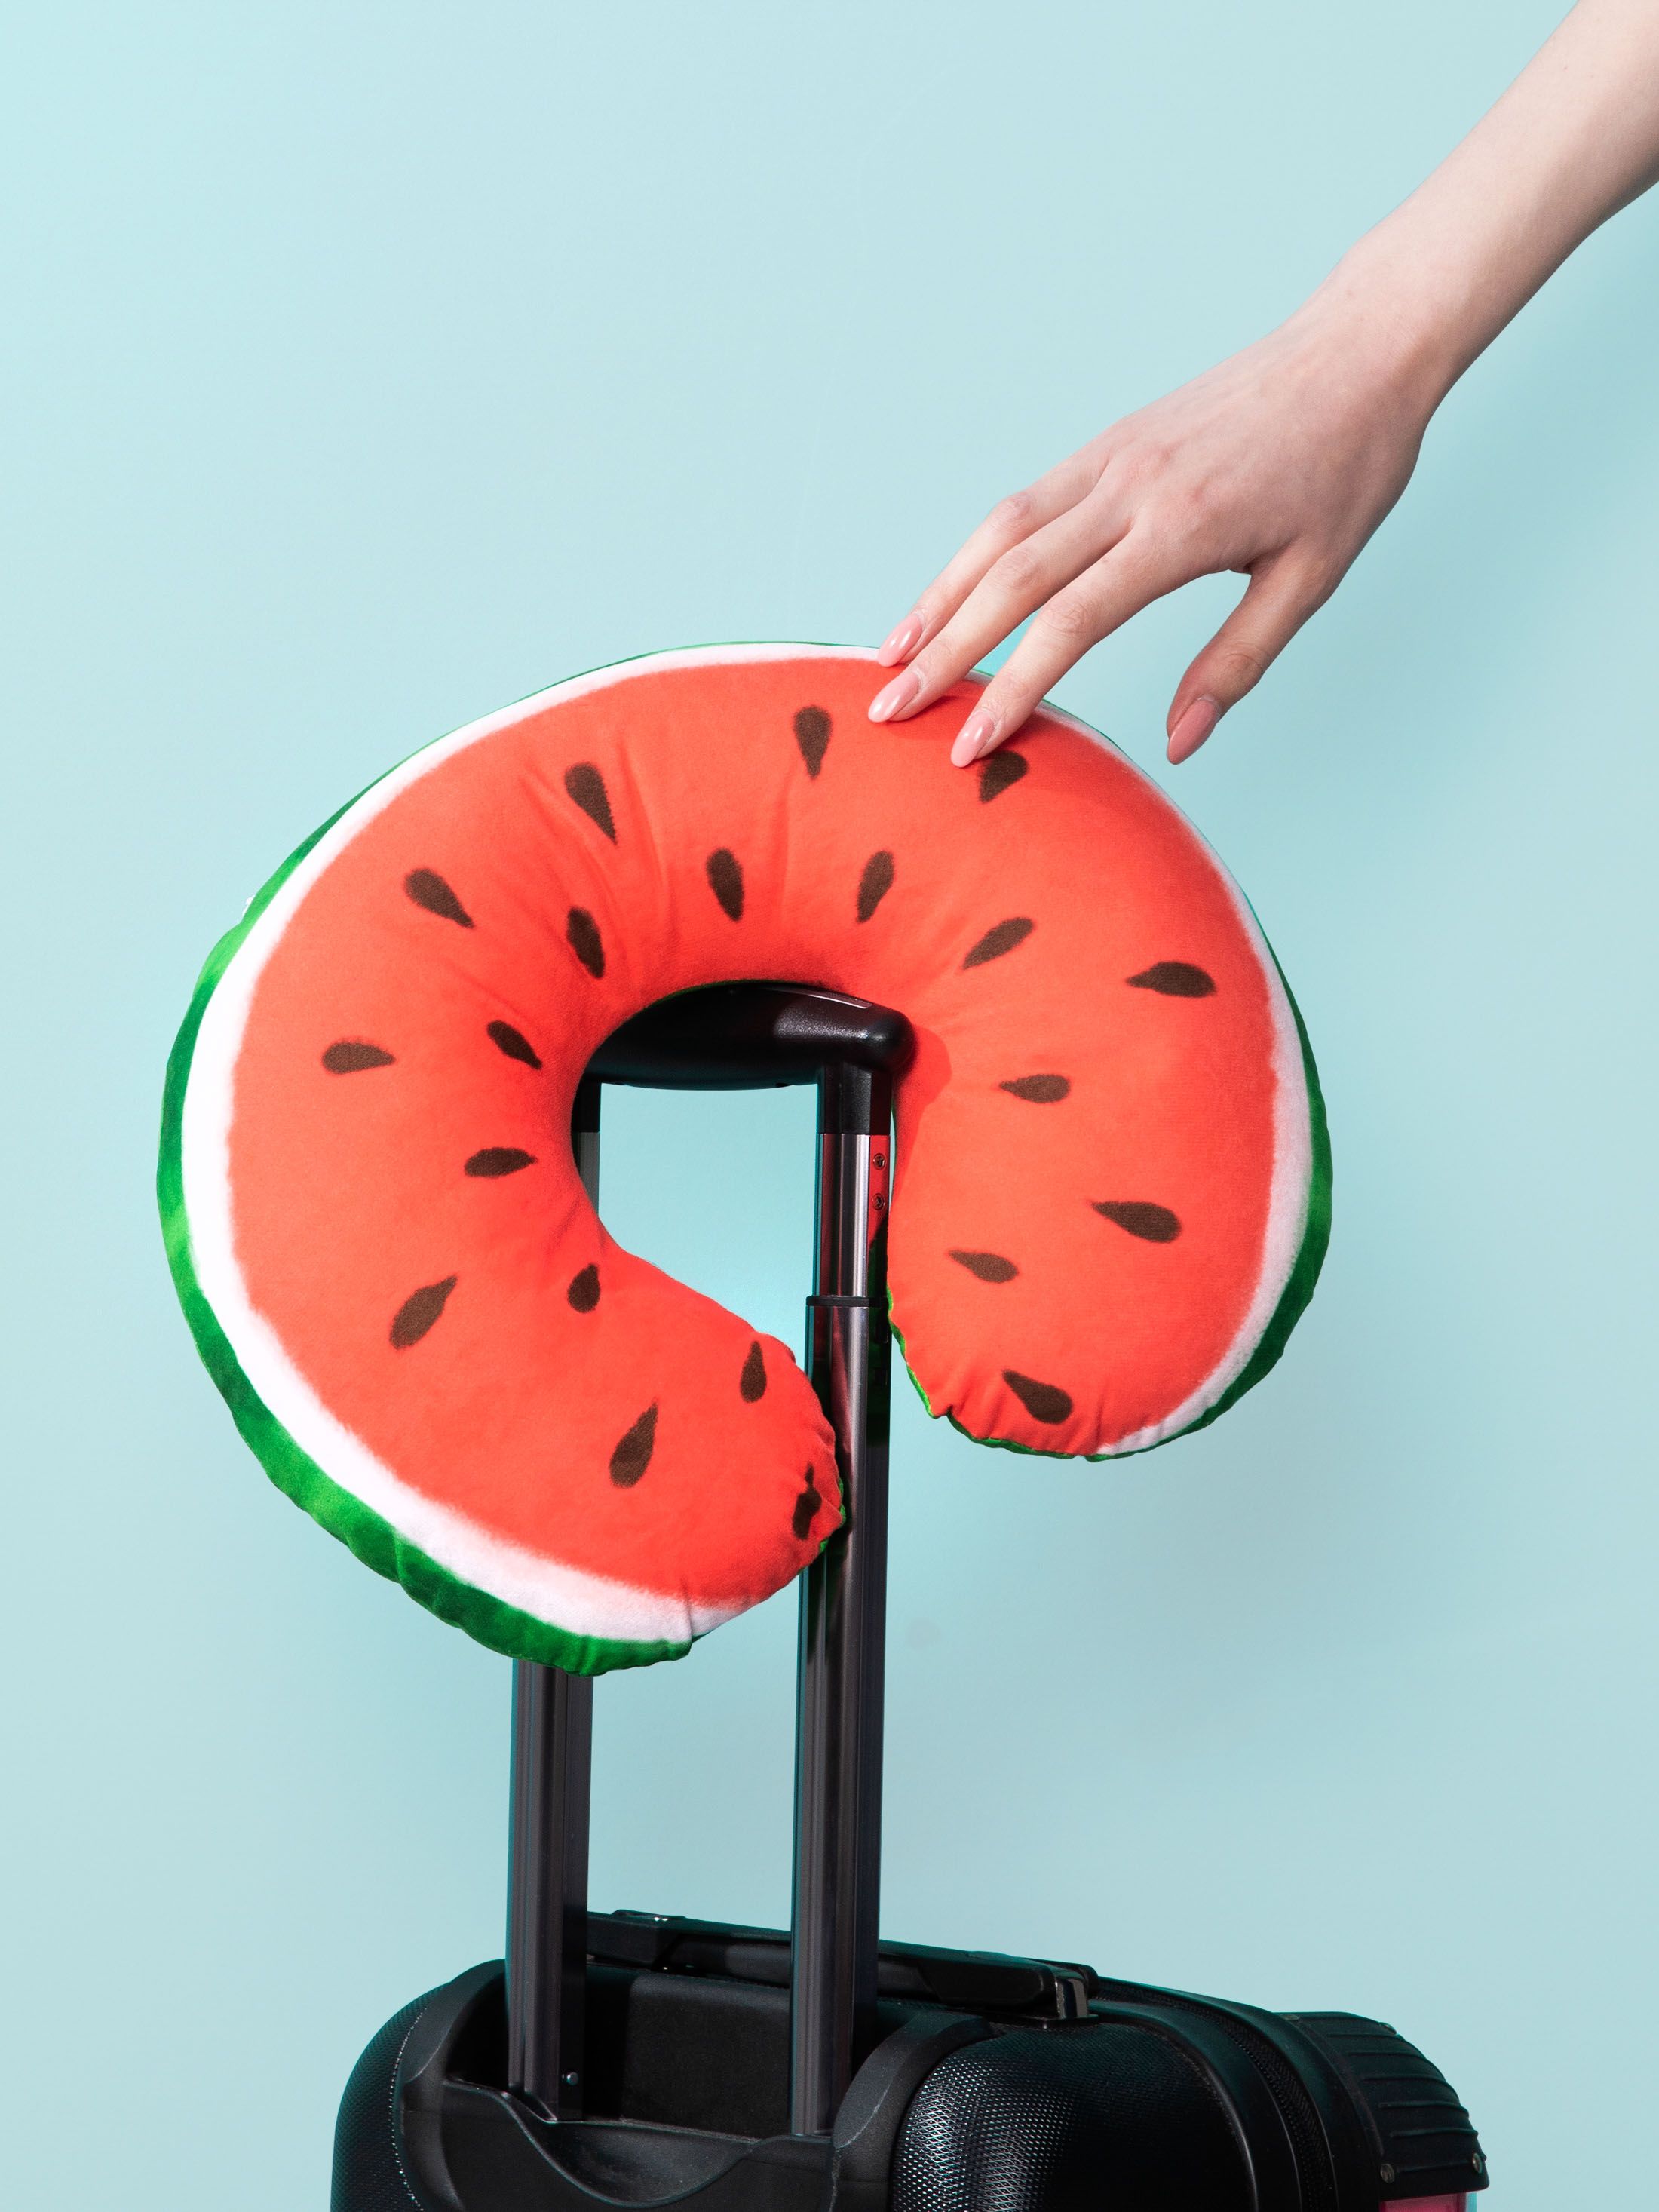 nekkussen bedrukken met watermeloen print